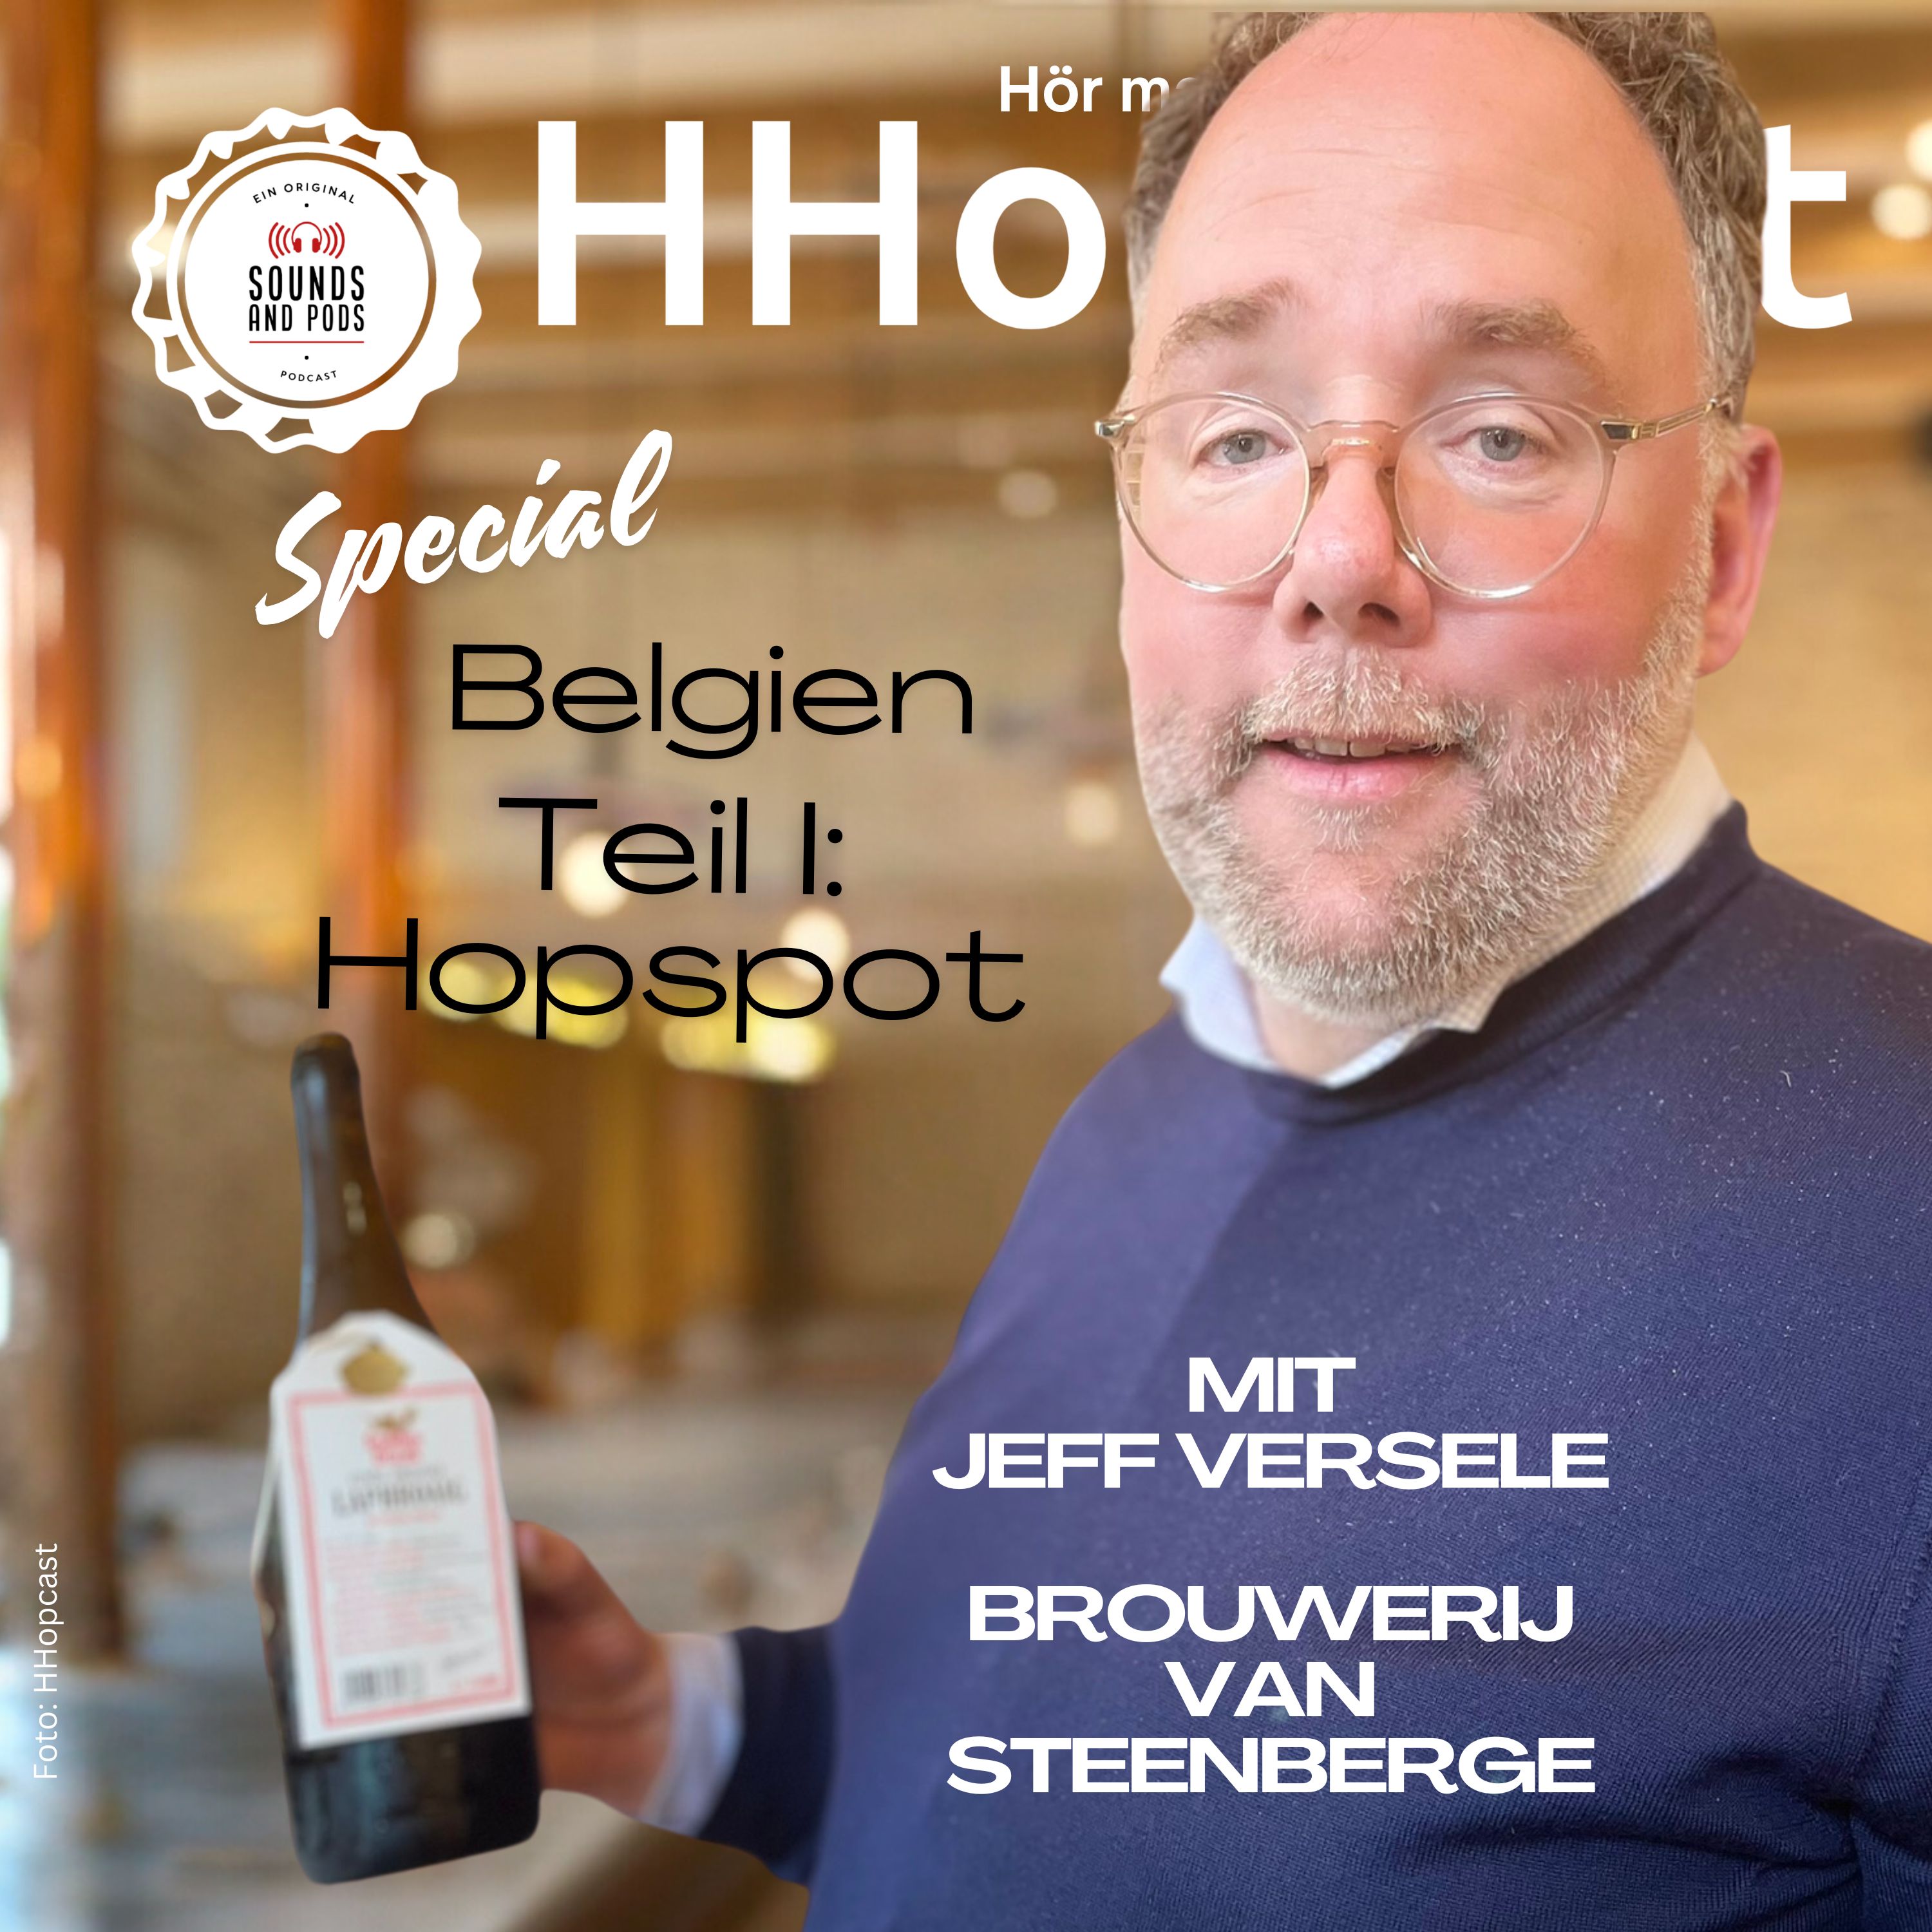 Hopspot – der neue Hotspot für Beerlover in Belgien?